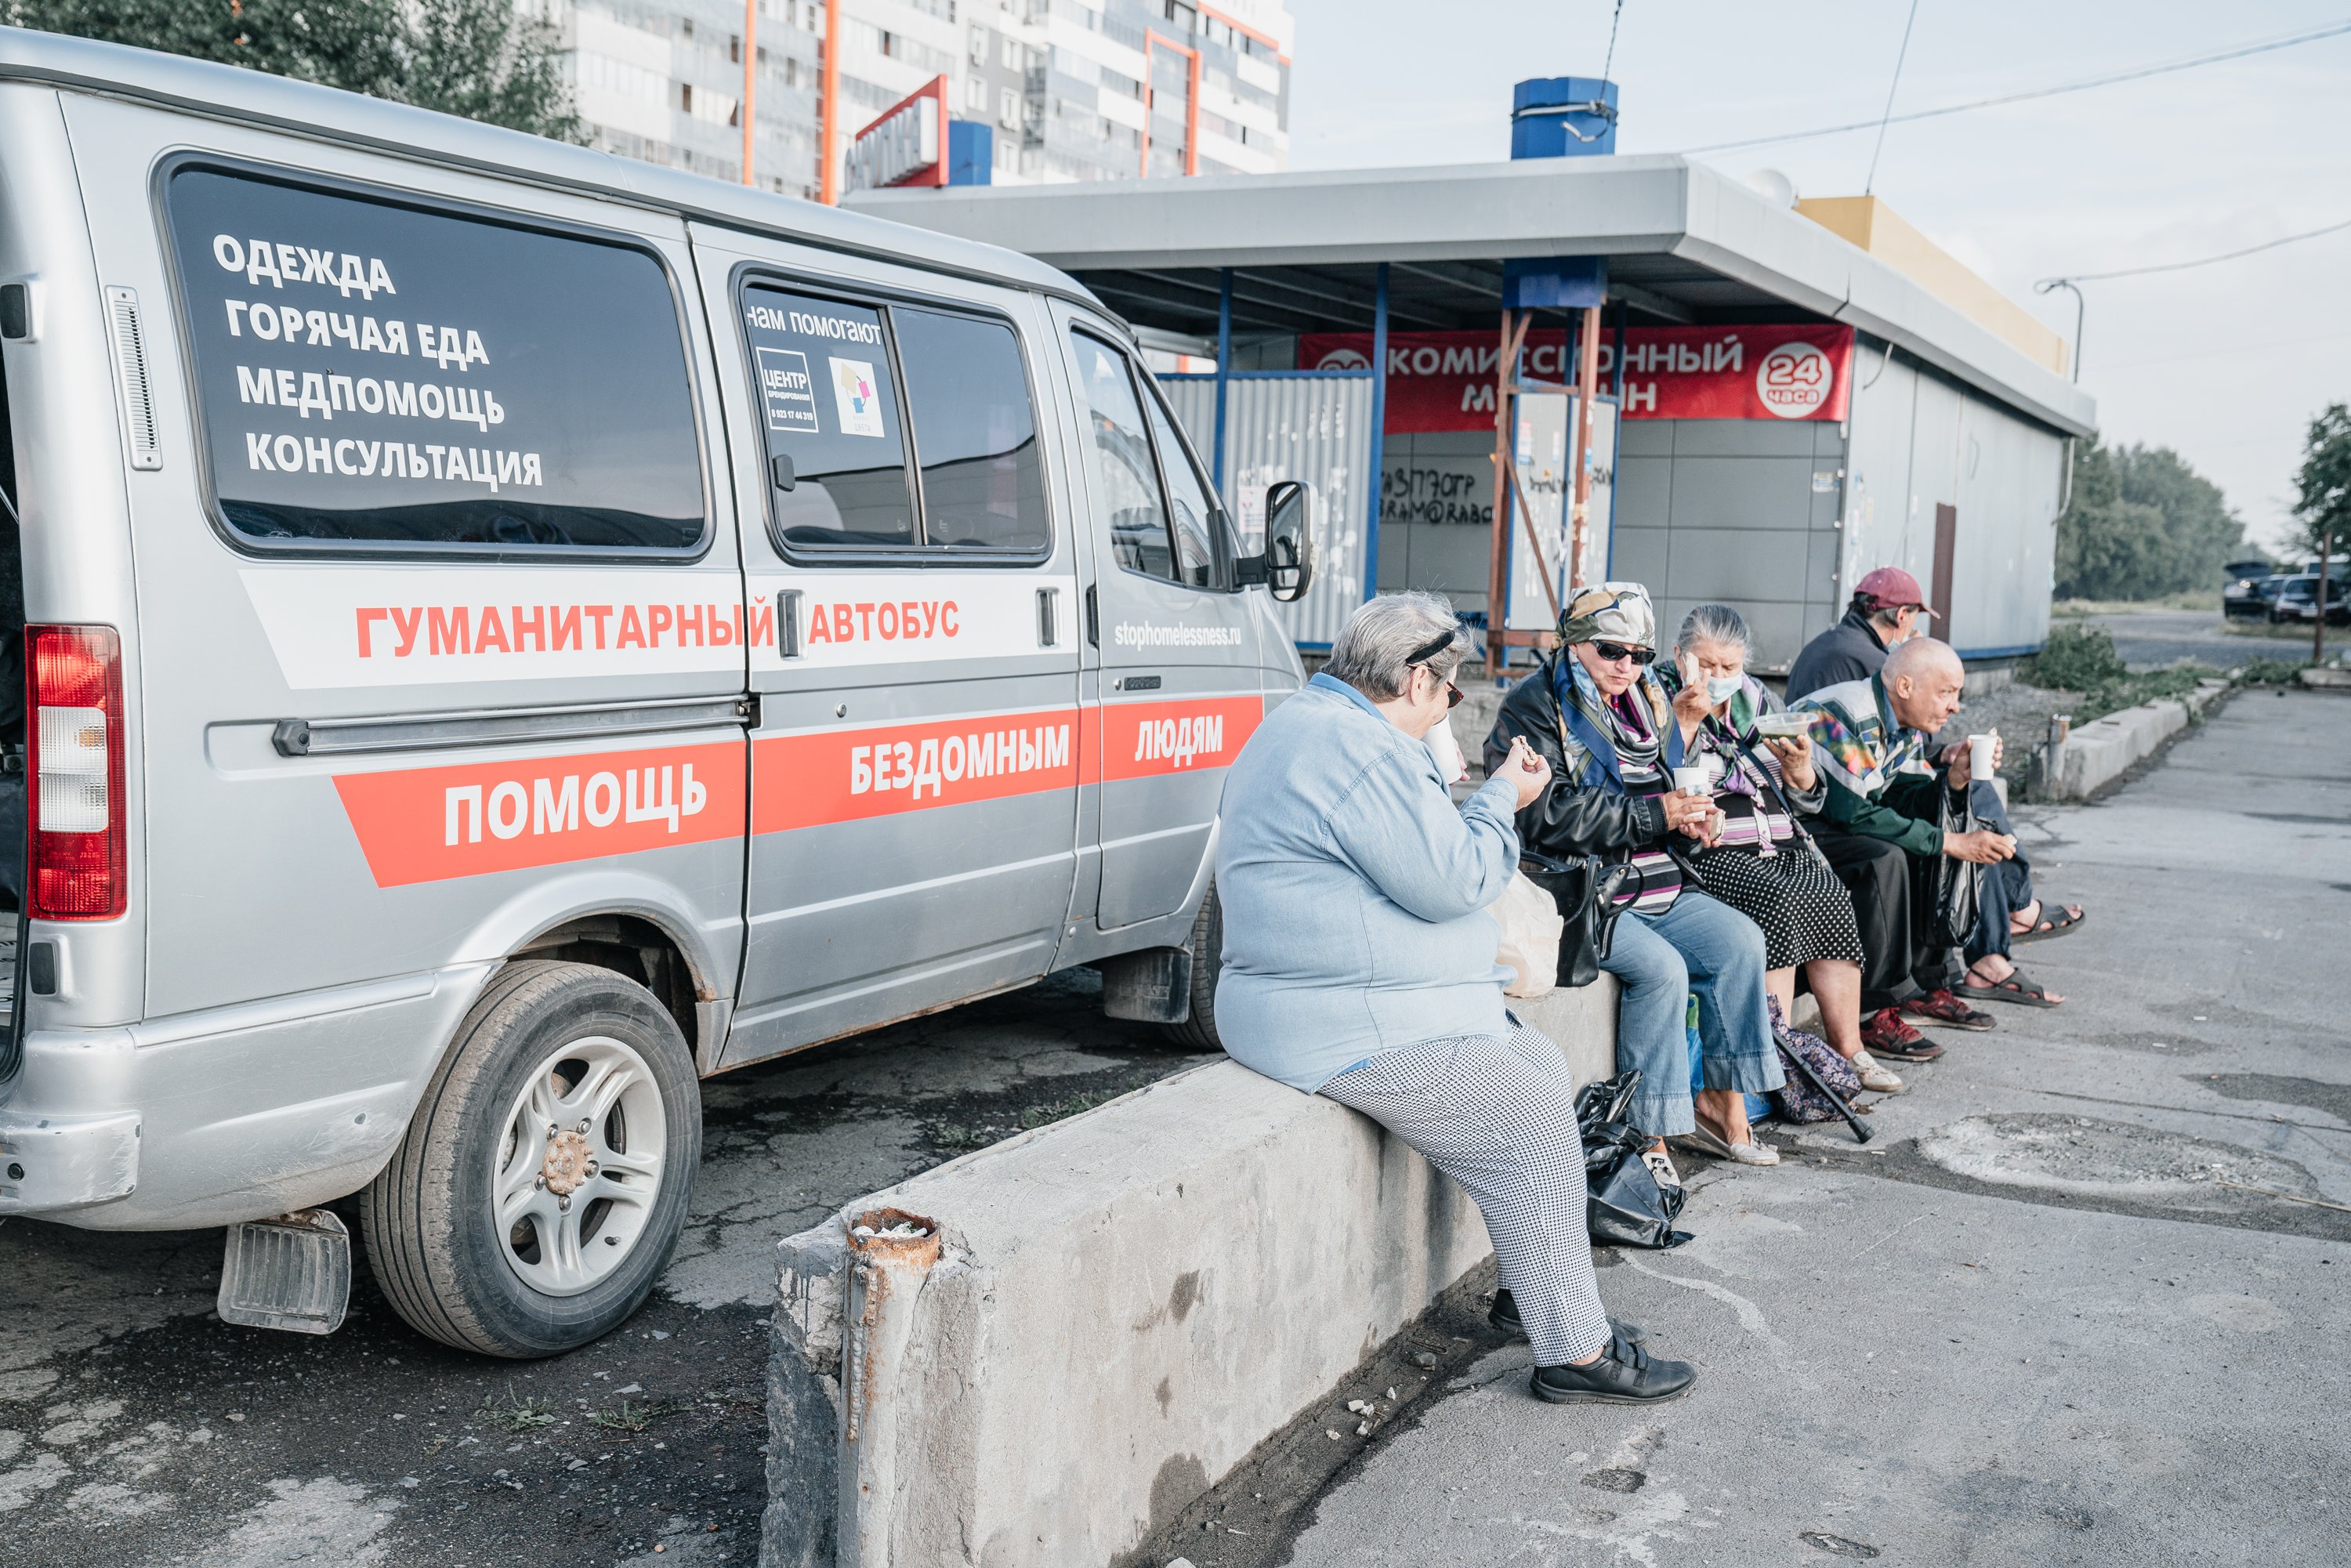 «Лента» окажет помощь бездомным в Новосибирске и Самаре